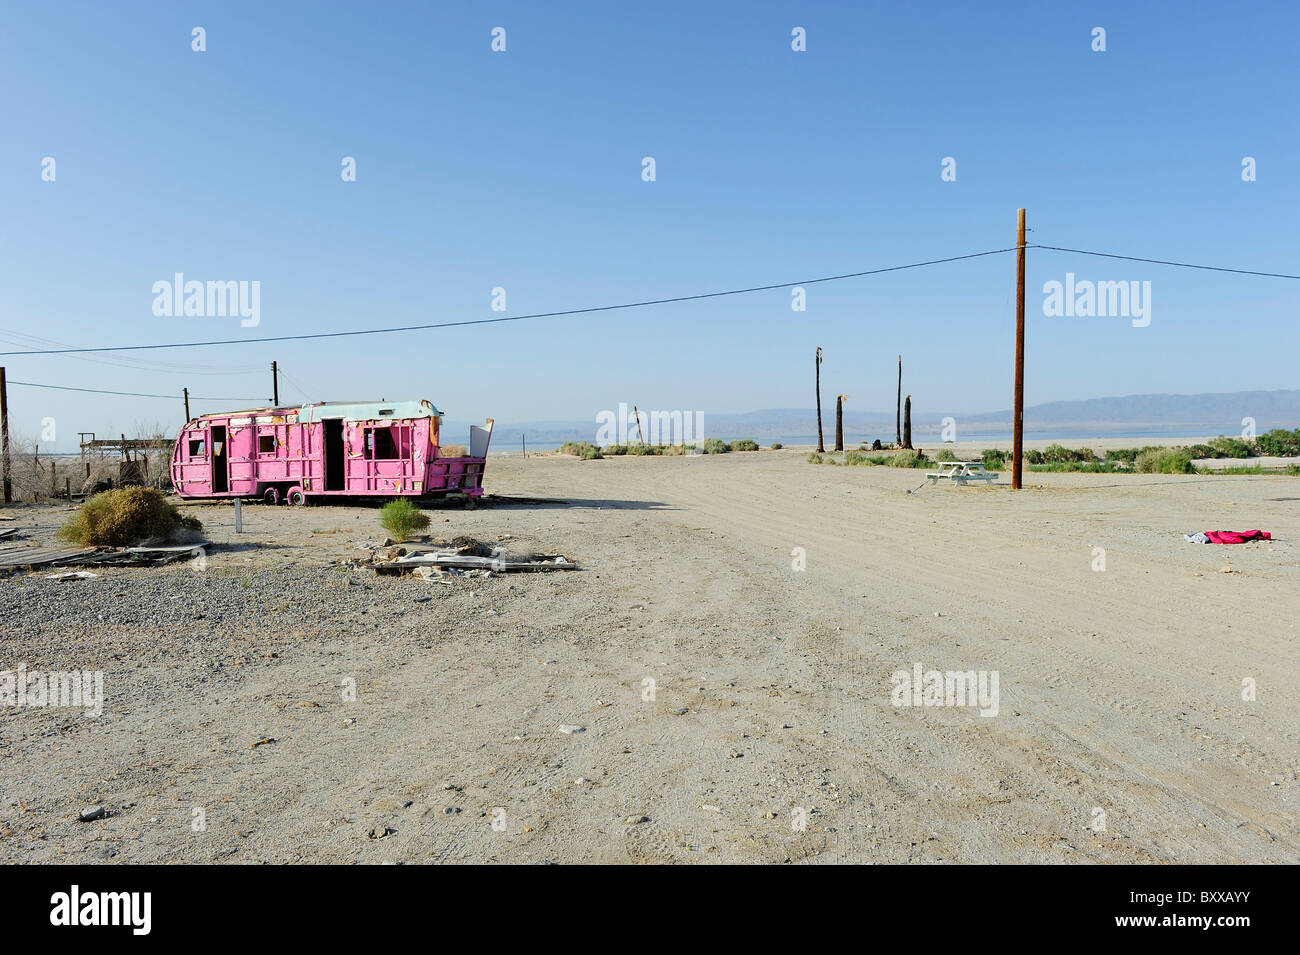 Derelict pink trailer/Caravan on the shores of the Salton Sea, Salton Sea Beach, Southern California USA Stock Photo